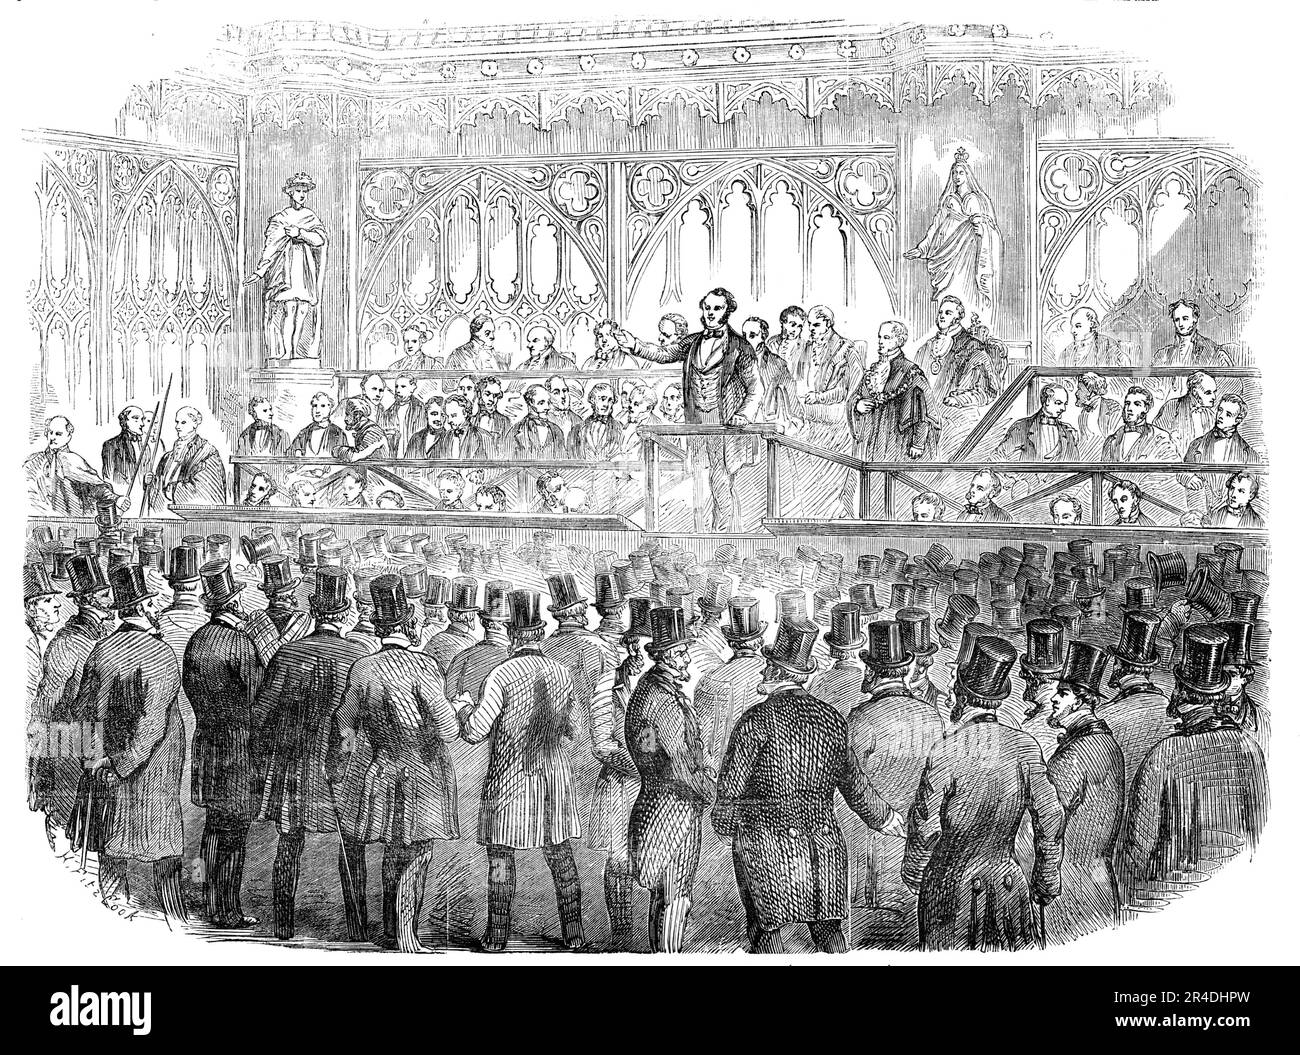 The Common Hall on Corporation Reform, in Guildhall, [Londra], 1856. Incontro politico '...per opporsi al disegno di legge della London Corporation....i procedimenti iniziarono dal Serjeant-at-Mace che chiamava coloro che non erano liverimani a lasciare la sala per dolore di prigionia - un annuncio che è stato ricevuto con forte risata. Il sindaco del Signore allora si alzò in piedi in avanti e disse... il disegno di legge che era ora davanti alla Camera dei Comuni... colpì alla radice dei loro antichi e preziosi privilegi... anche se il disegno di legge professava di ampliare la base elettorale della Corporation, in altri aspetti era un to Foto Stock